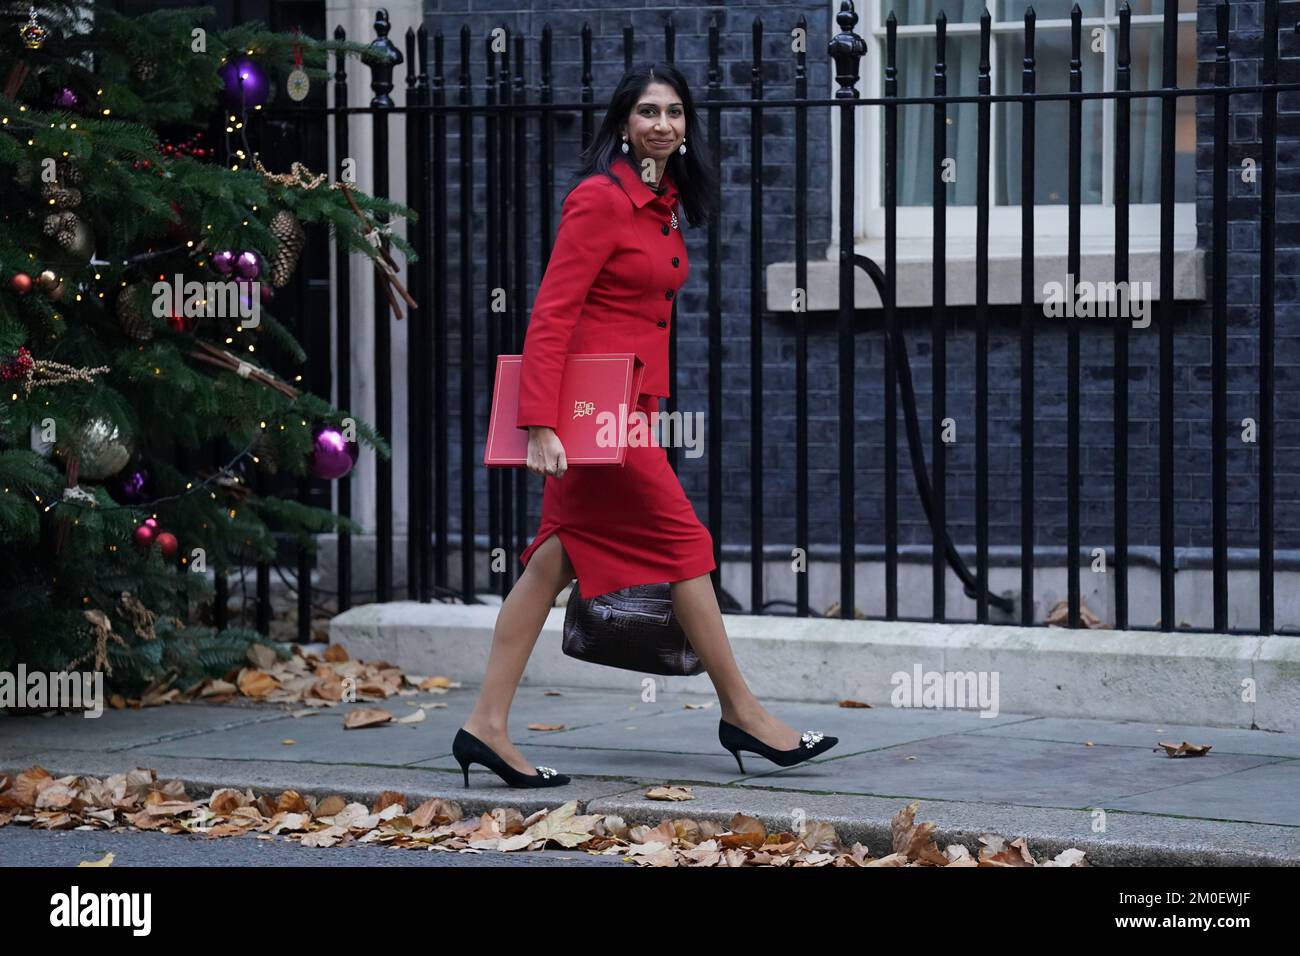 La Segreteria Suella Braverman arriva a Downing Street, Londra, in vista di una riunione del Gabinetto. Data immagine: Martedì 6 dicembre 2022. Foto Stock